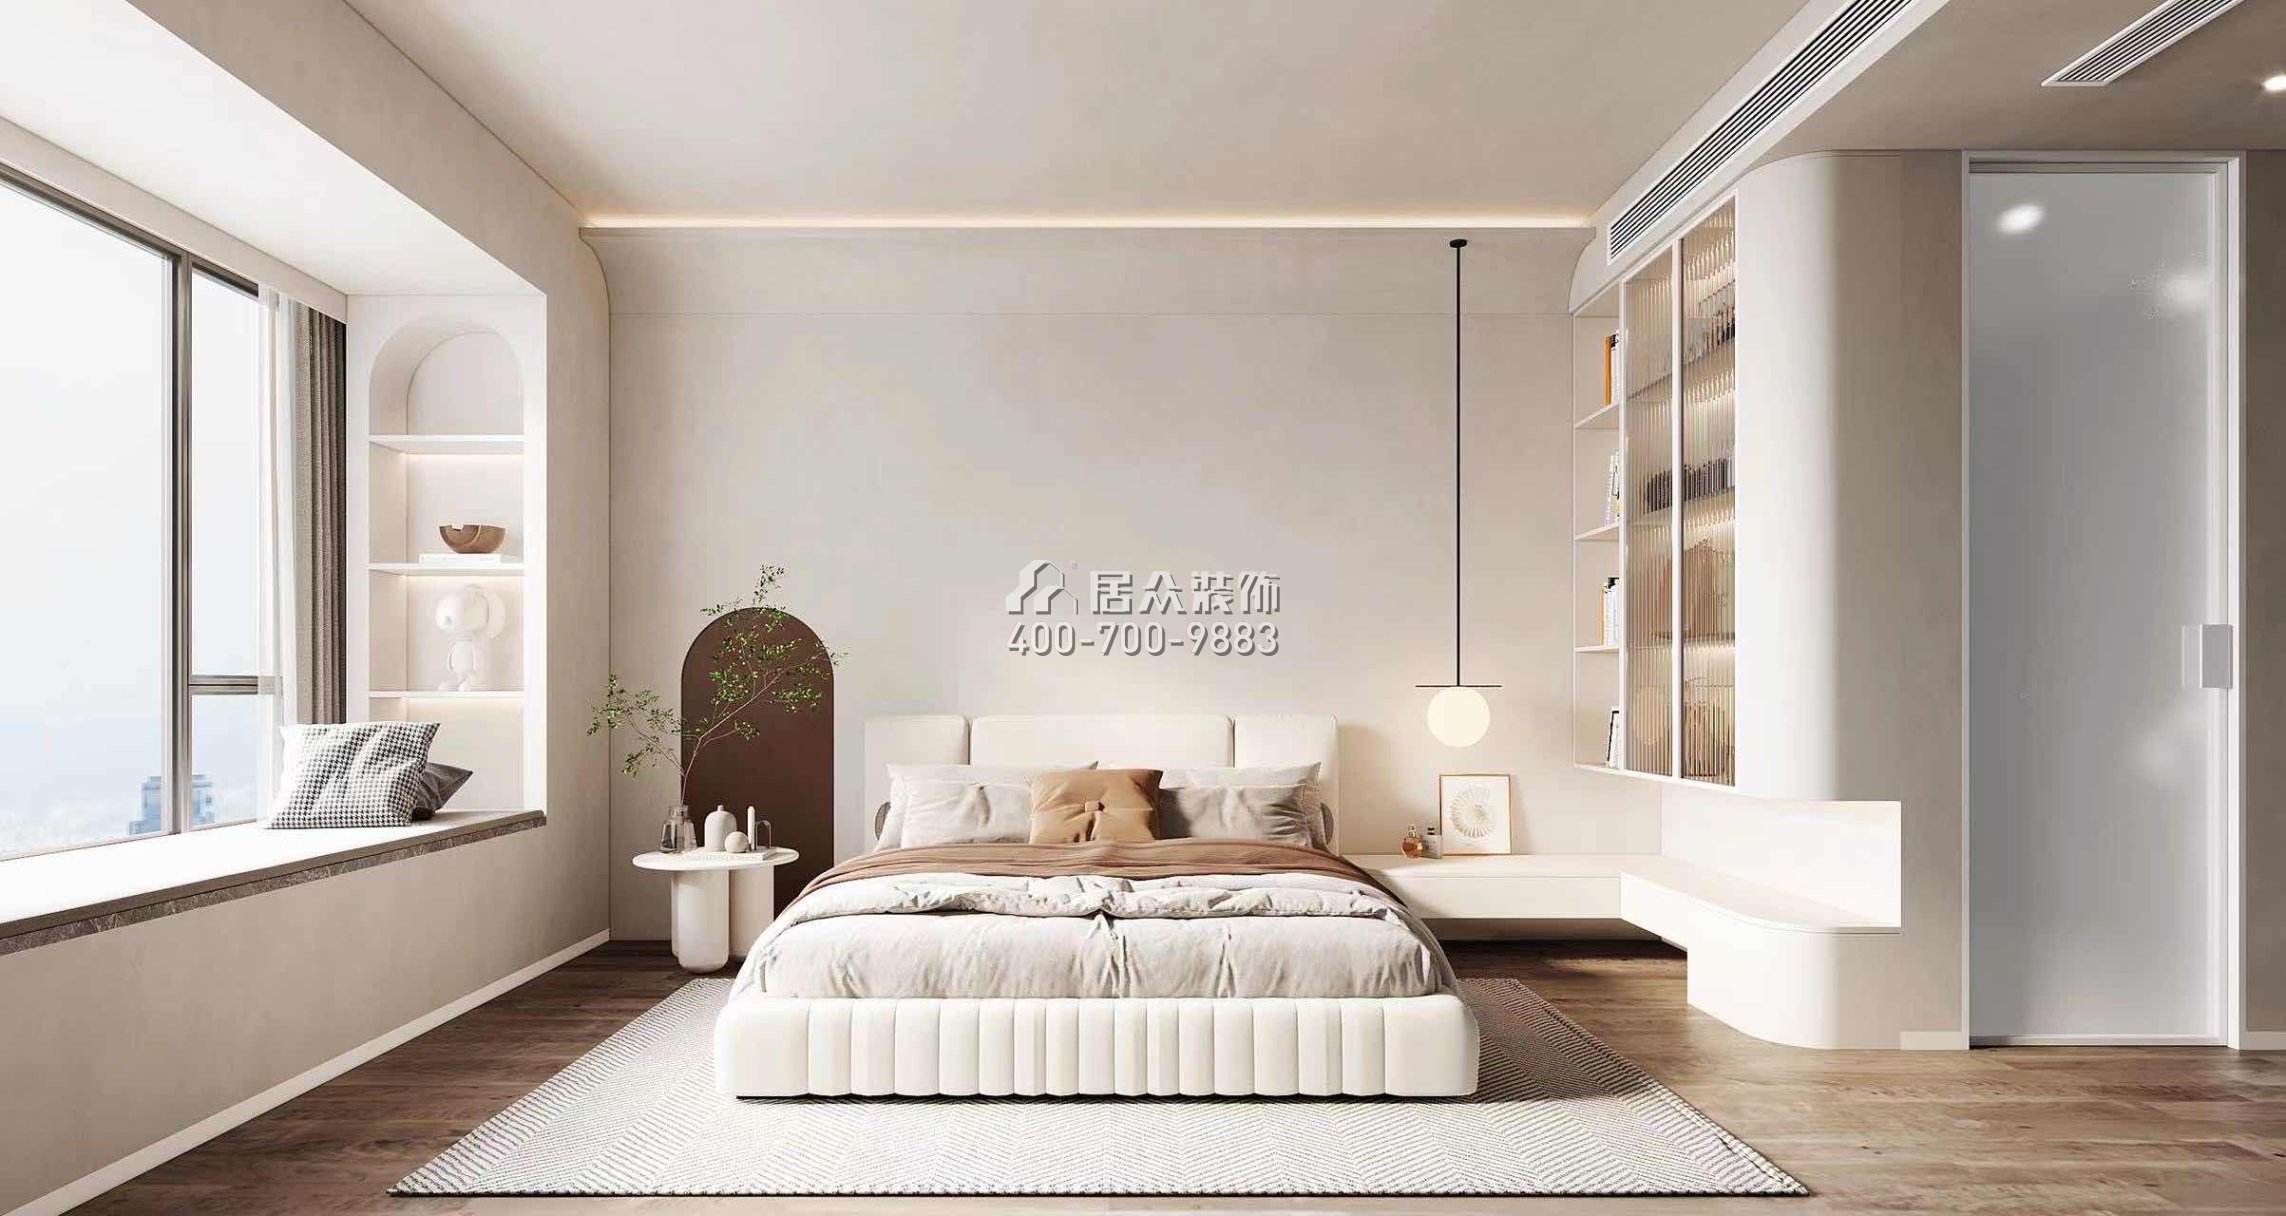 中洲濱海華府一期166平方米現代簡約風格平層戶型臥室裝修效果圖